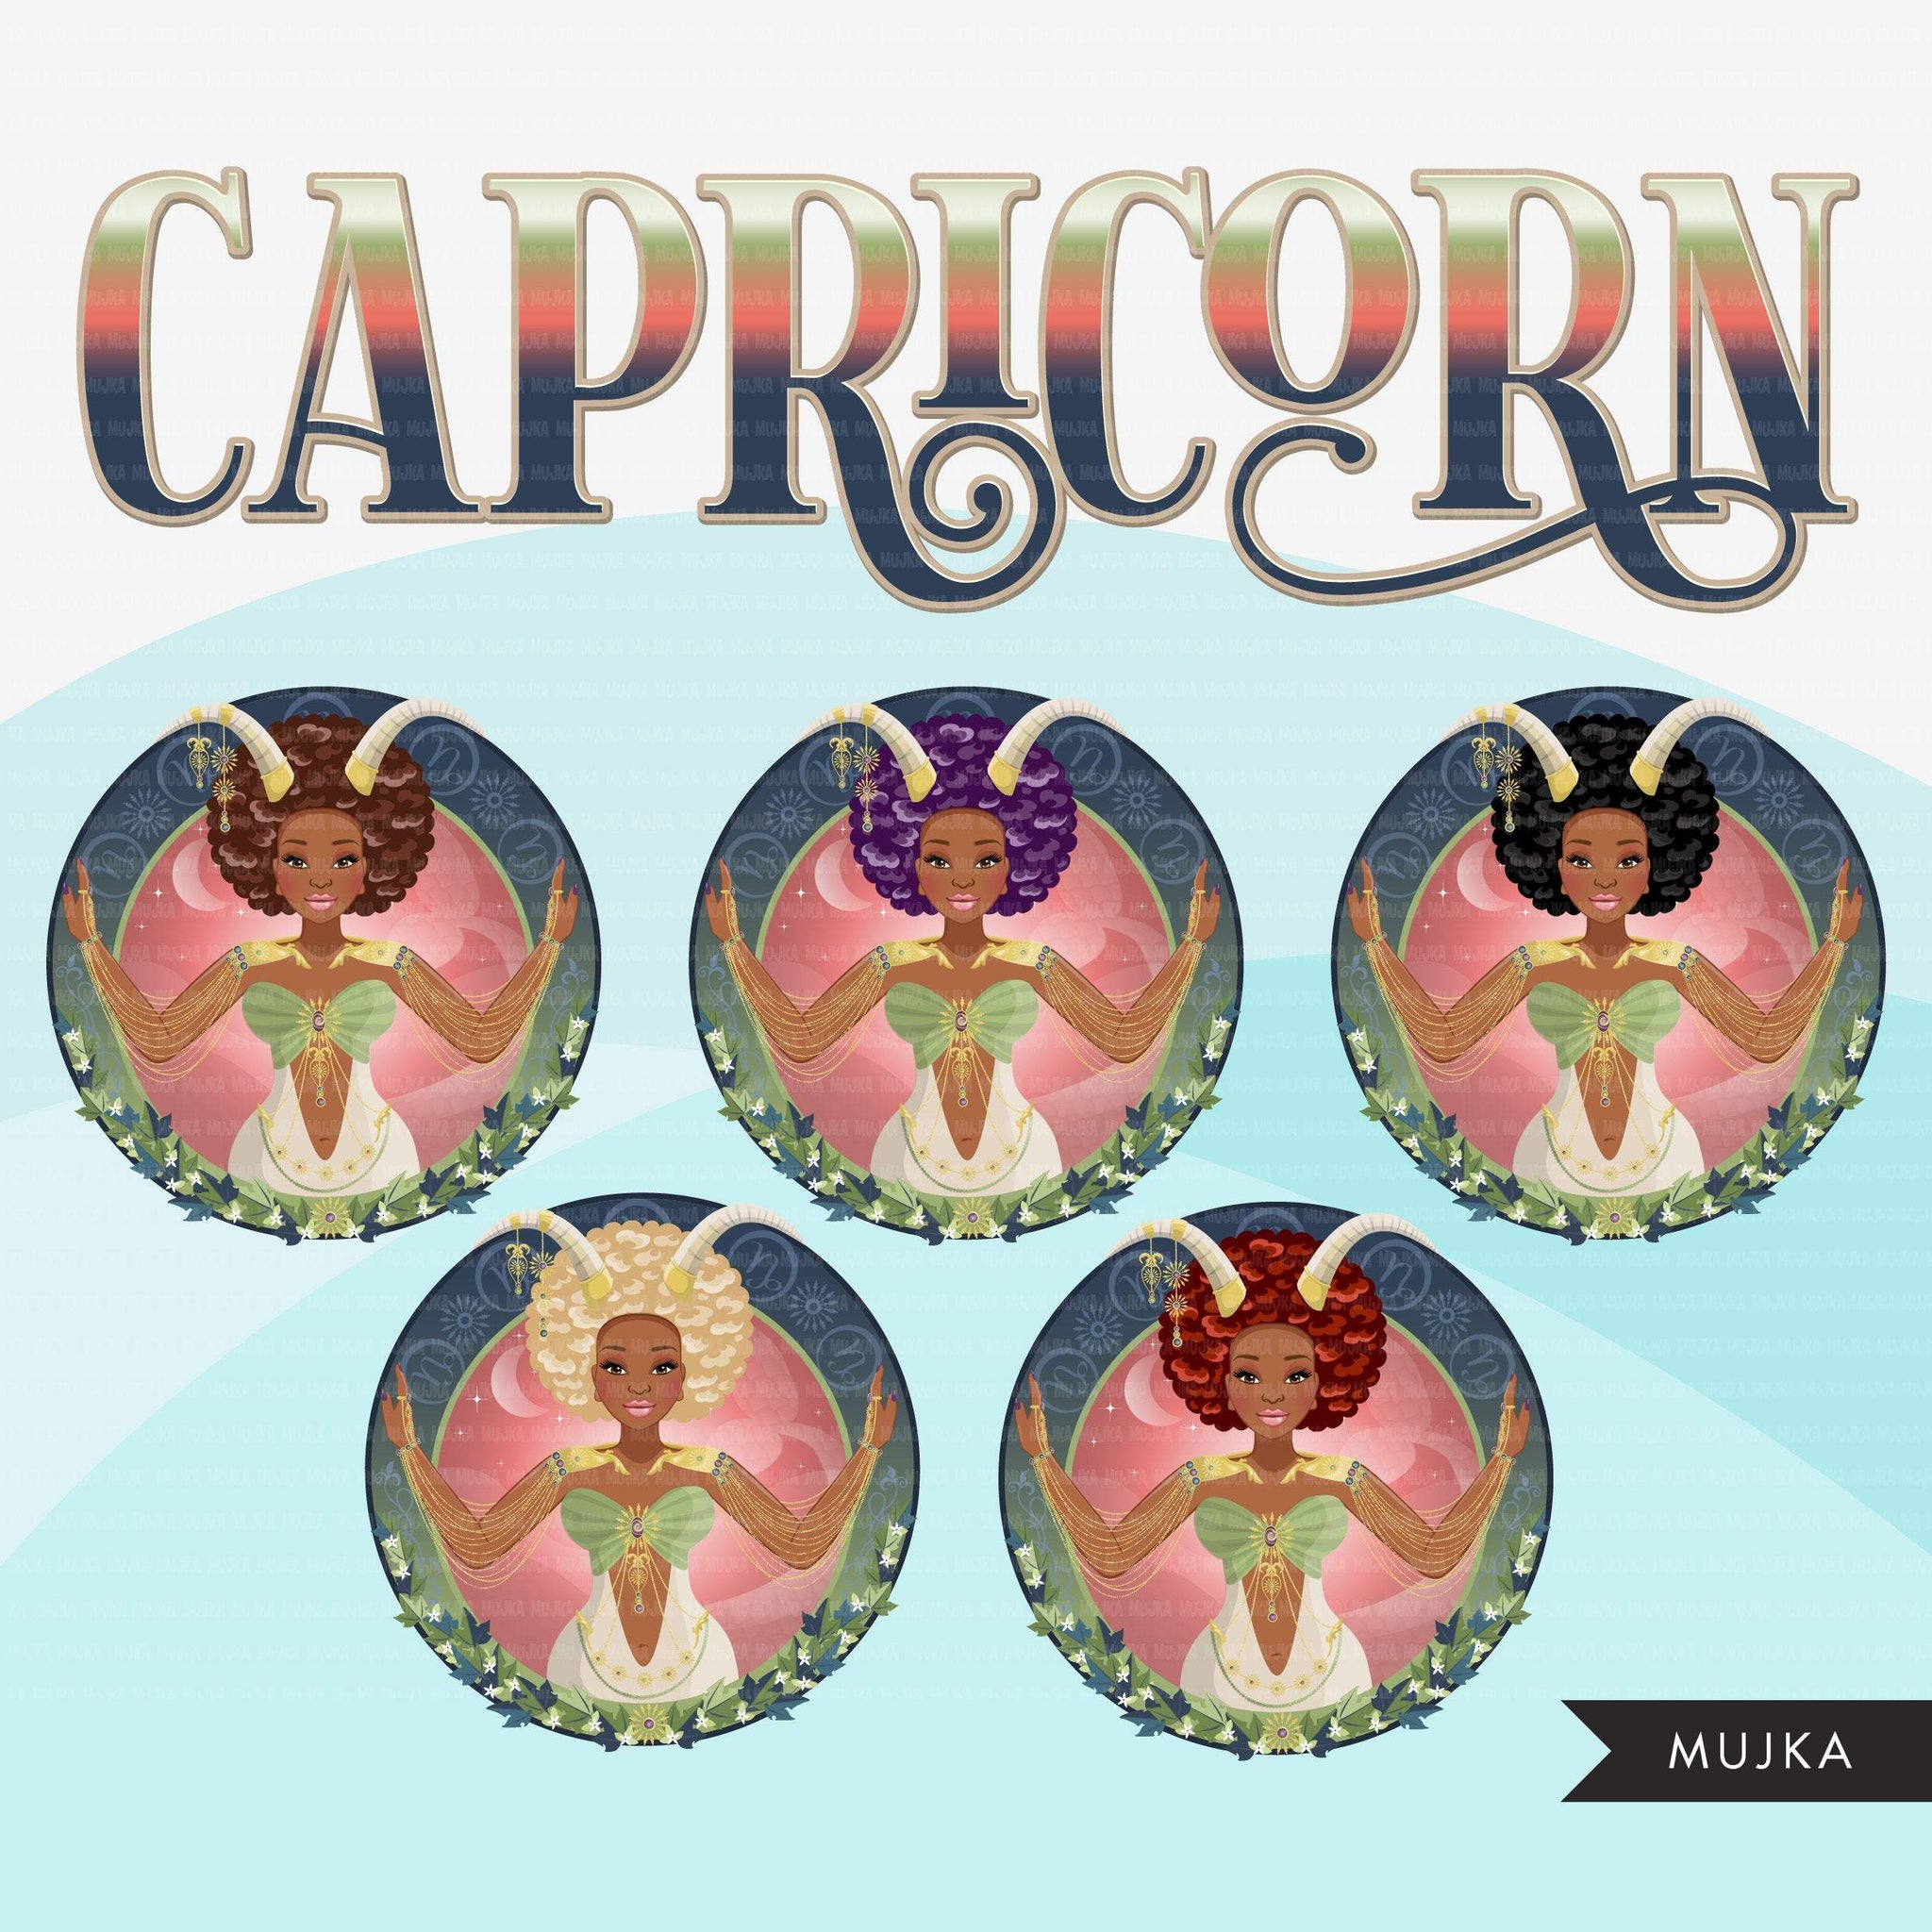 capricorn clipart